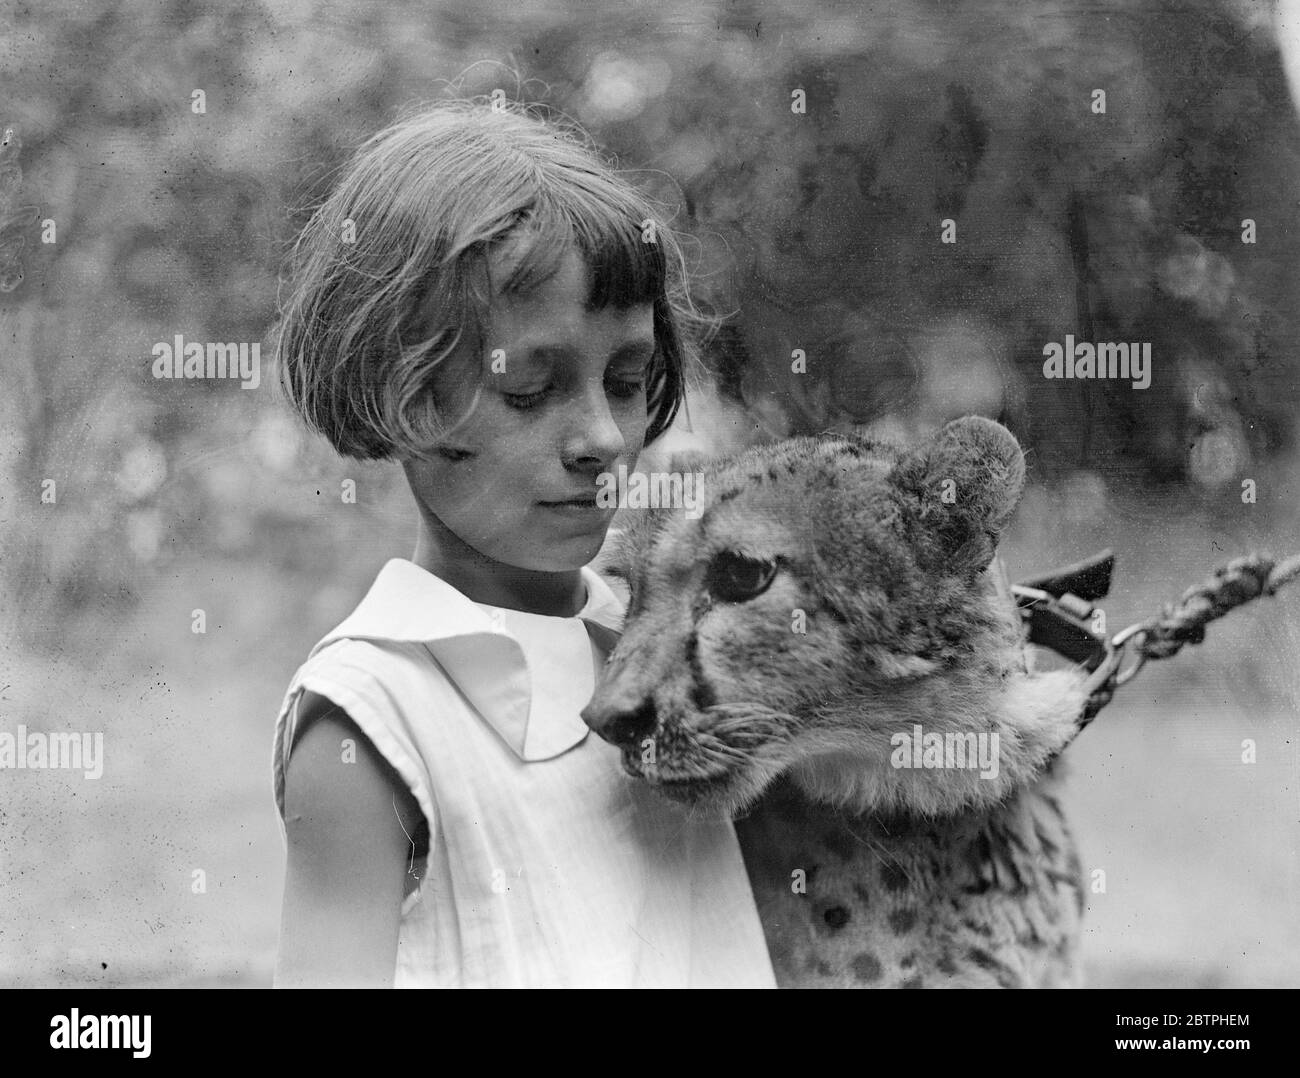 Prinz. Felix, der zahme Leopard, findet im London Zoo viele Spielkameraden, jetzt, da die Sommerferien der Schüler in vollem Gange sind. Pauline Taylor macht sich mit dem zahmen Leoparden Felix im London Zoo angefreundet. 16 August 1932 . Stockfoto